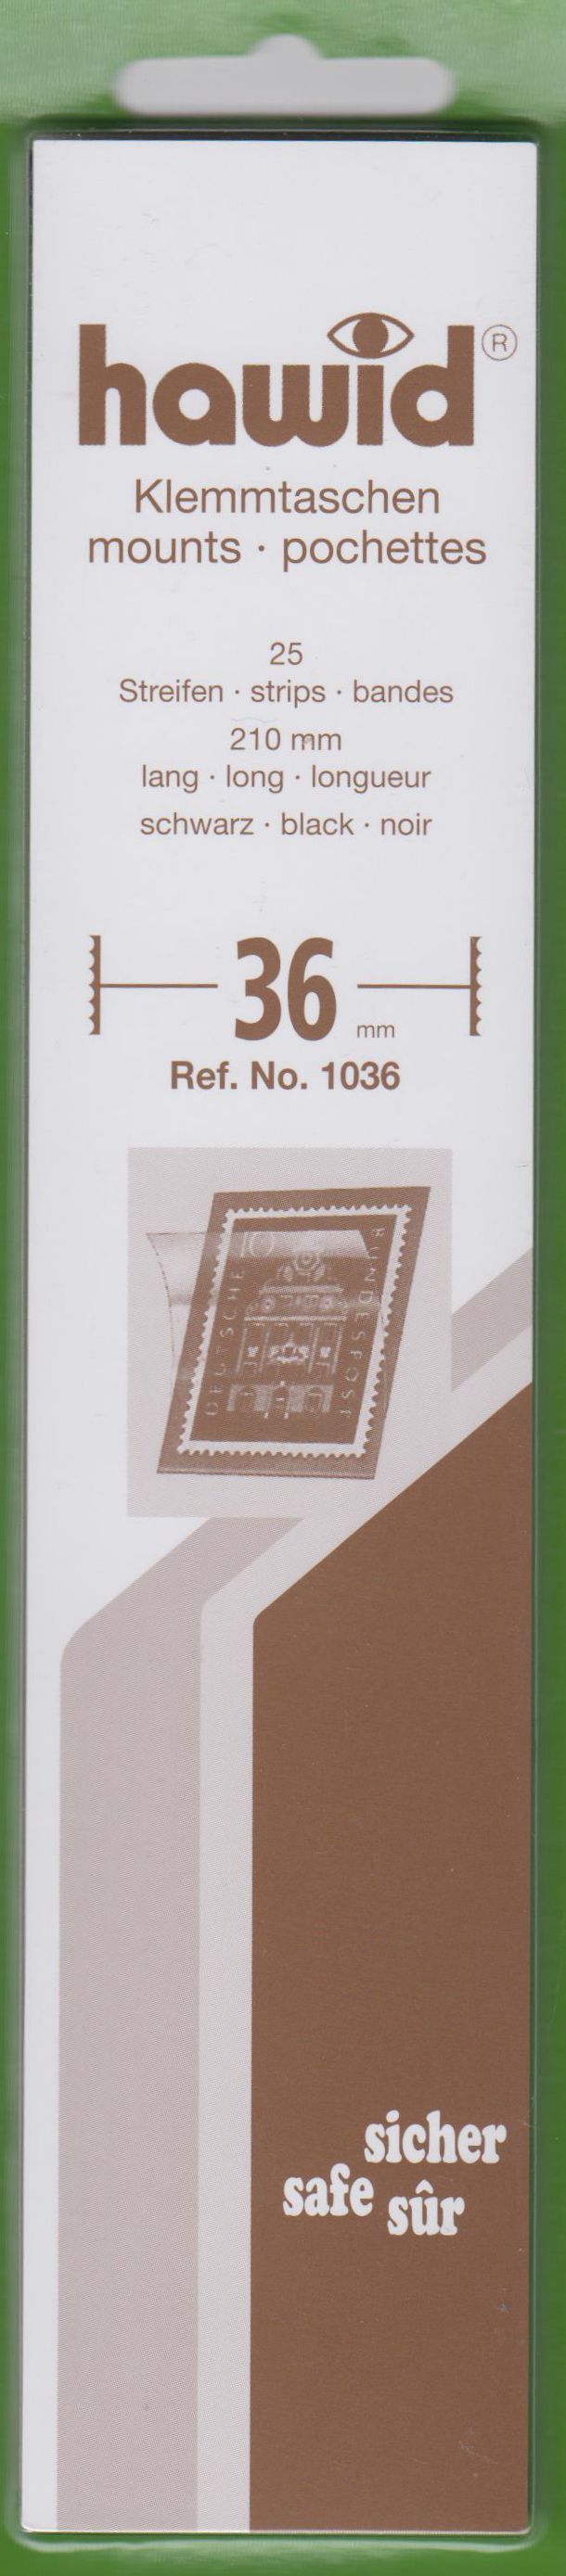 Hawid Klemmtaschen Nr. 1036, 25 Streifen 210 x 36 mm, schwarz